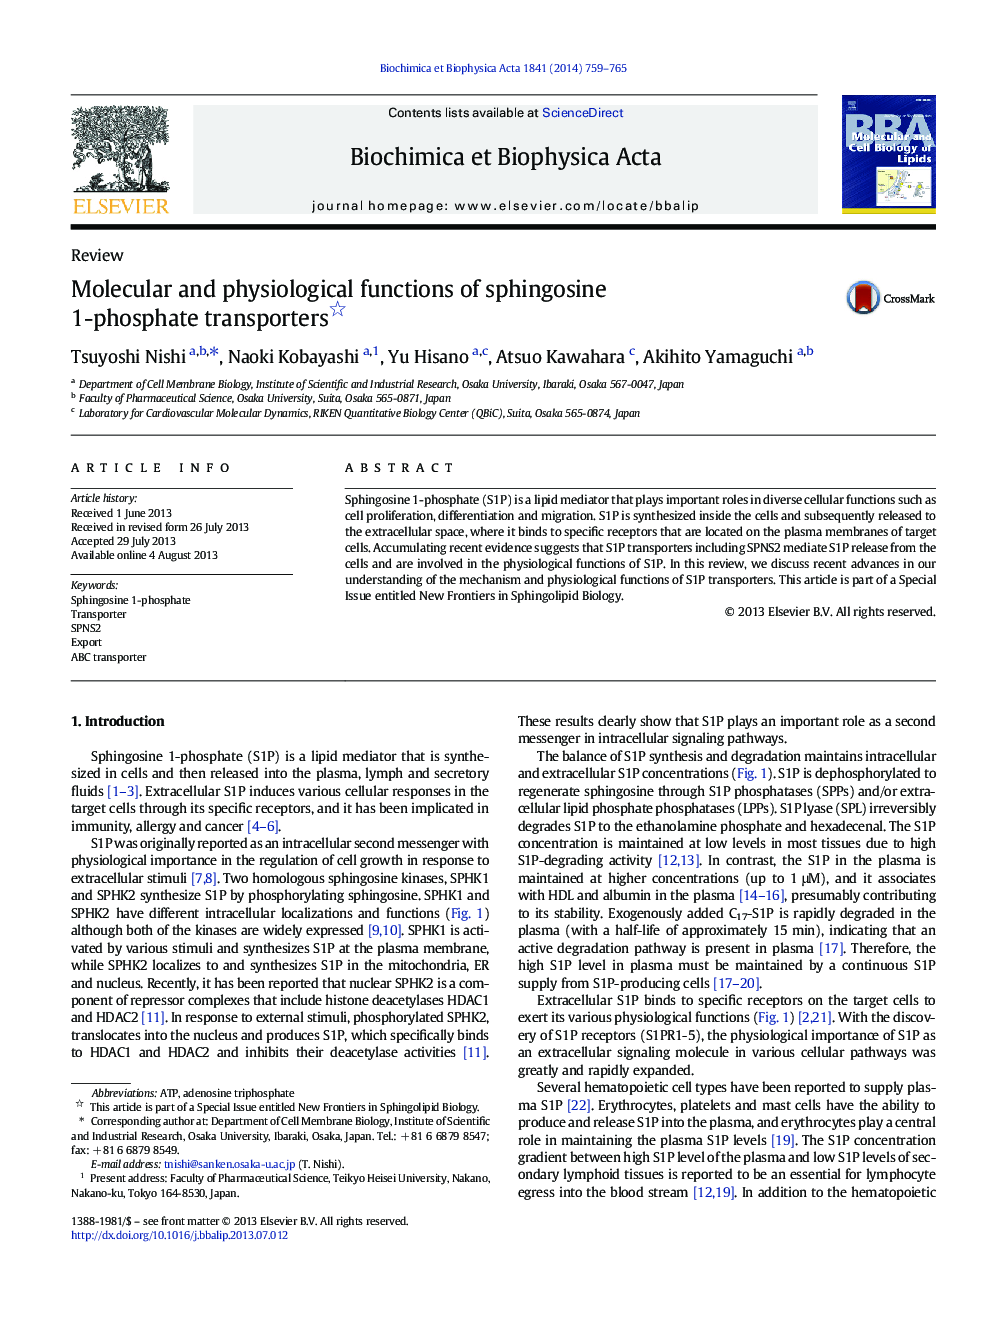 توابع مولکولی و فیزیولوژیکی انتقال دهنده های سیفیگوسین 1-فسفات 